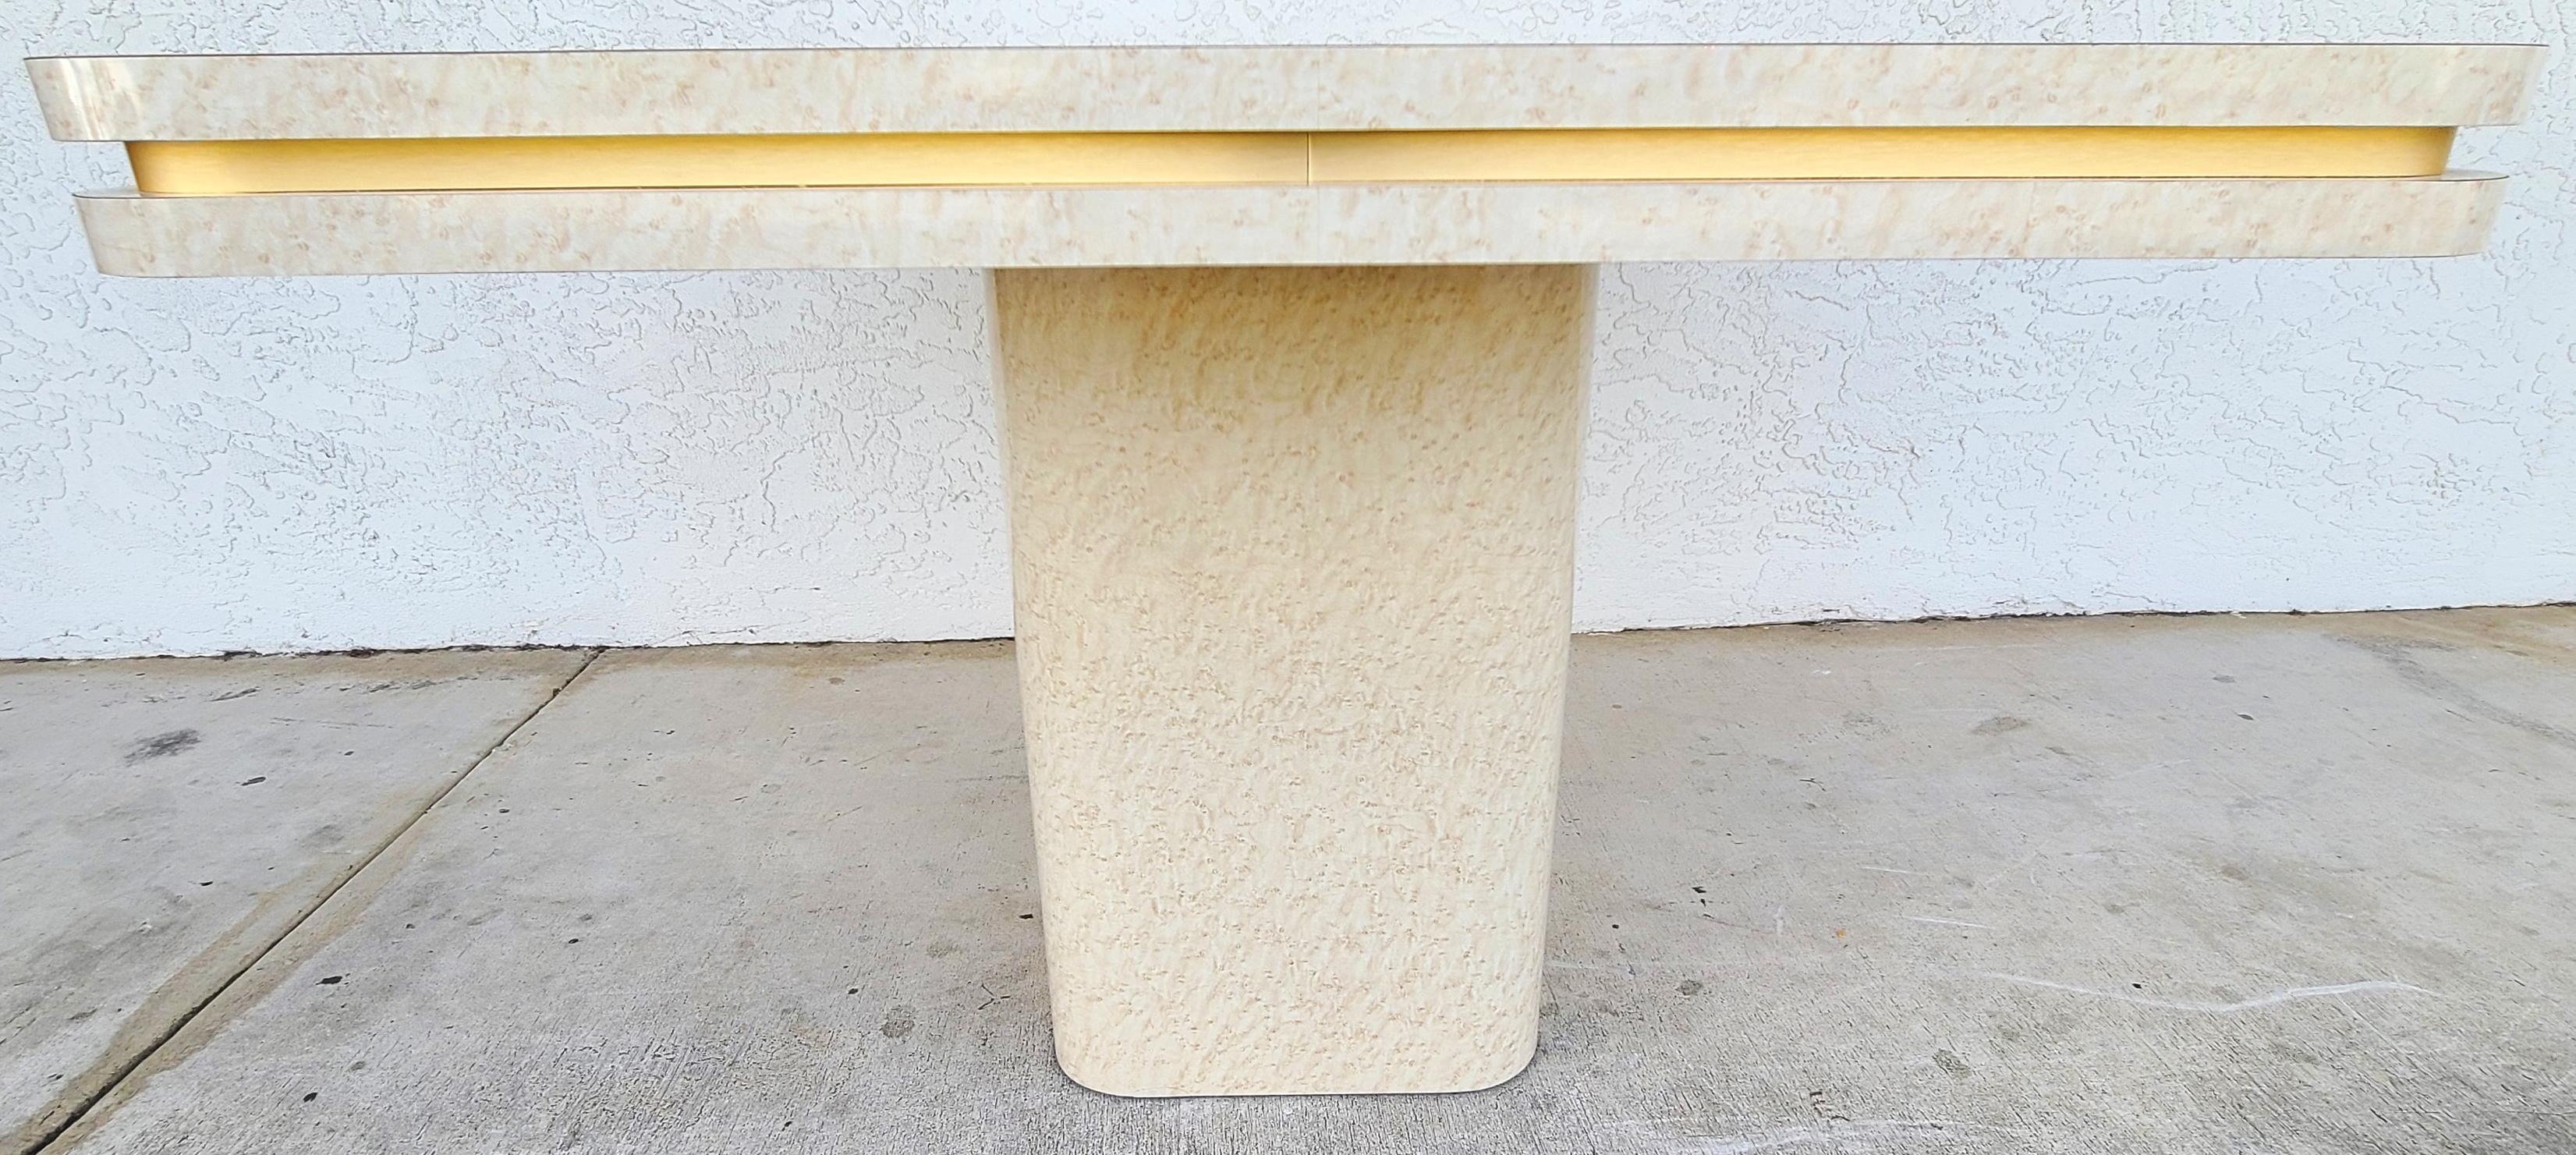 Offrant l'un de nos récents Palm Beach Estate Fine Furniture Acquisitions d'un 1960's Mid Century Modern Formica piédestal Dining Game Table avec encastré or Trim autour des bords latéraux.

Nous en avions deux au moment de la mise en vente. L'un